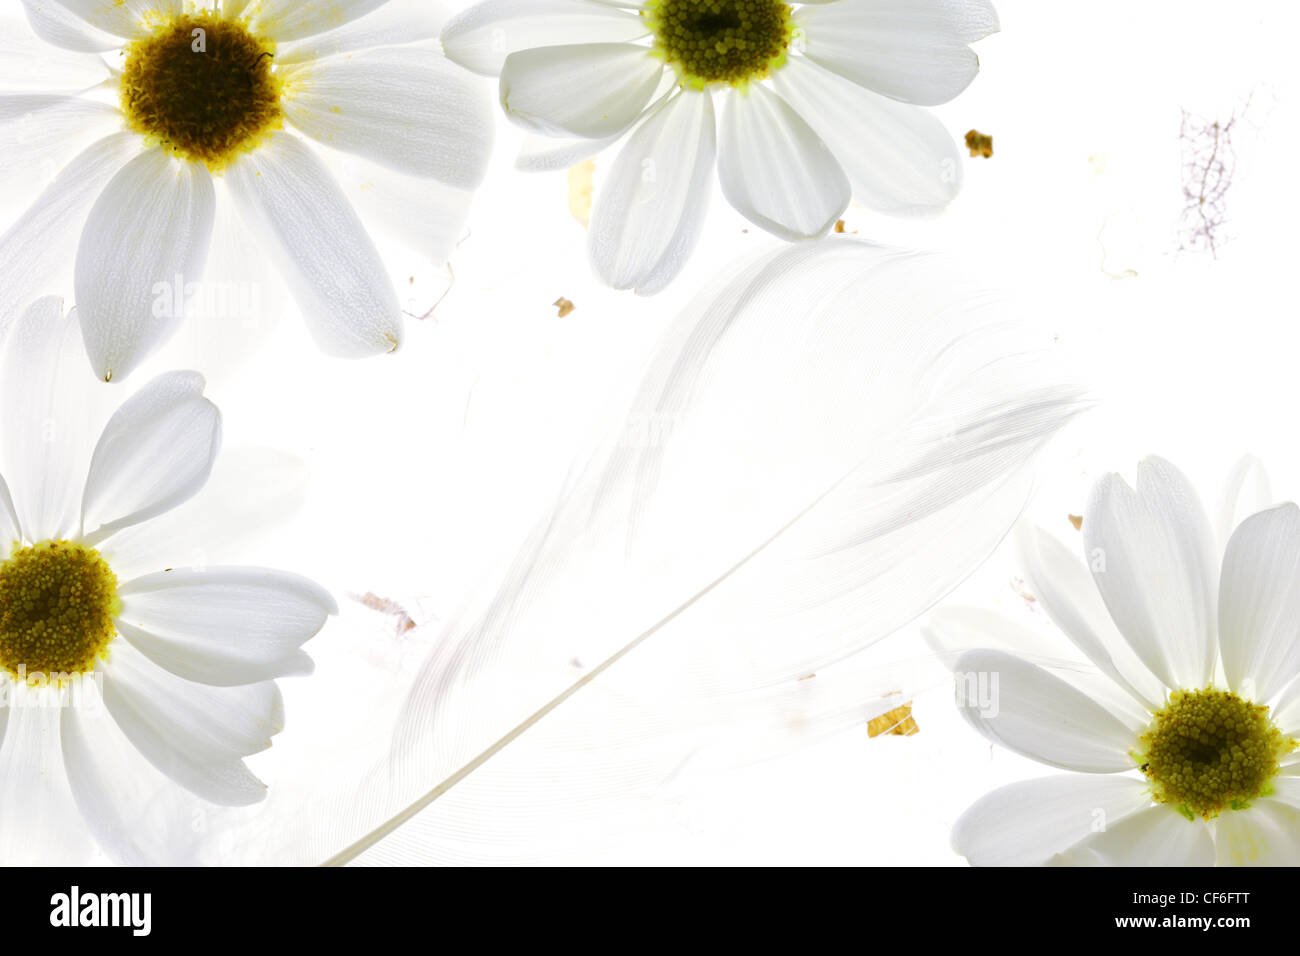 Daisy bianca petali con giù su sfondo bianco Foto Stock